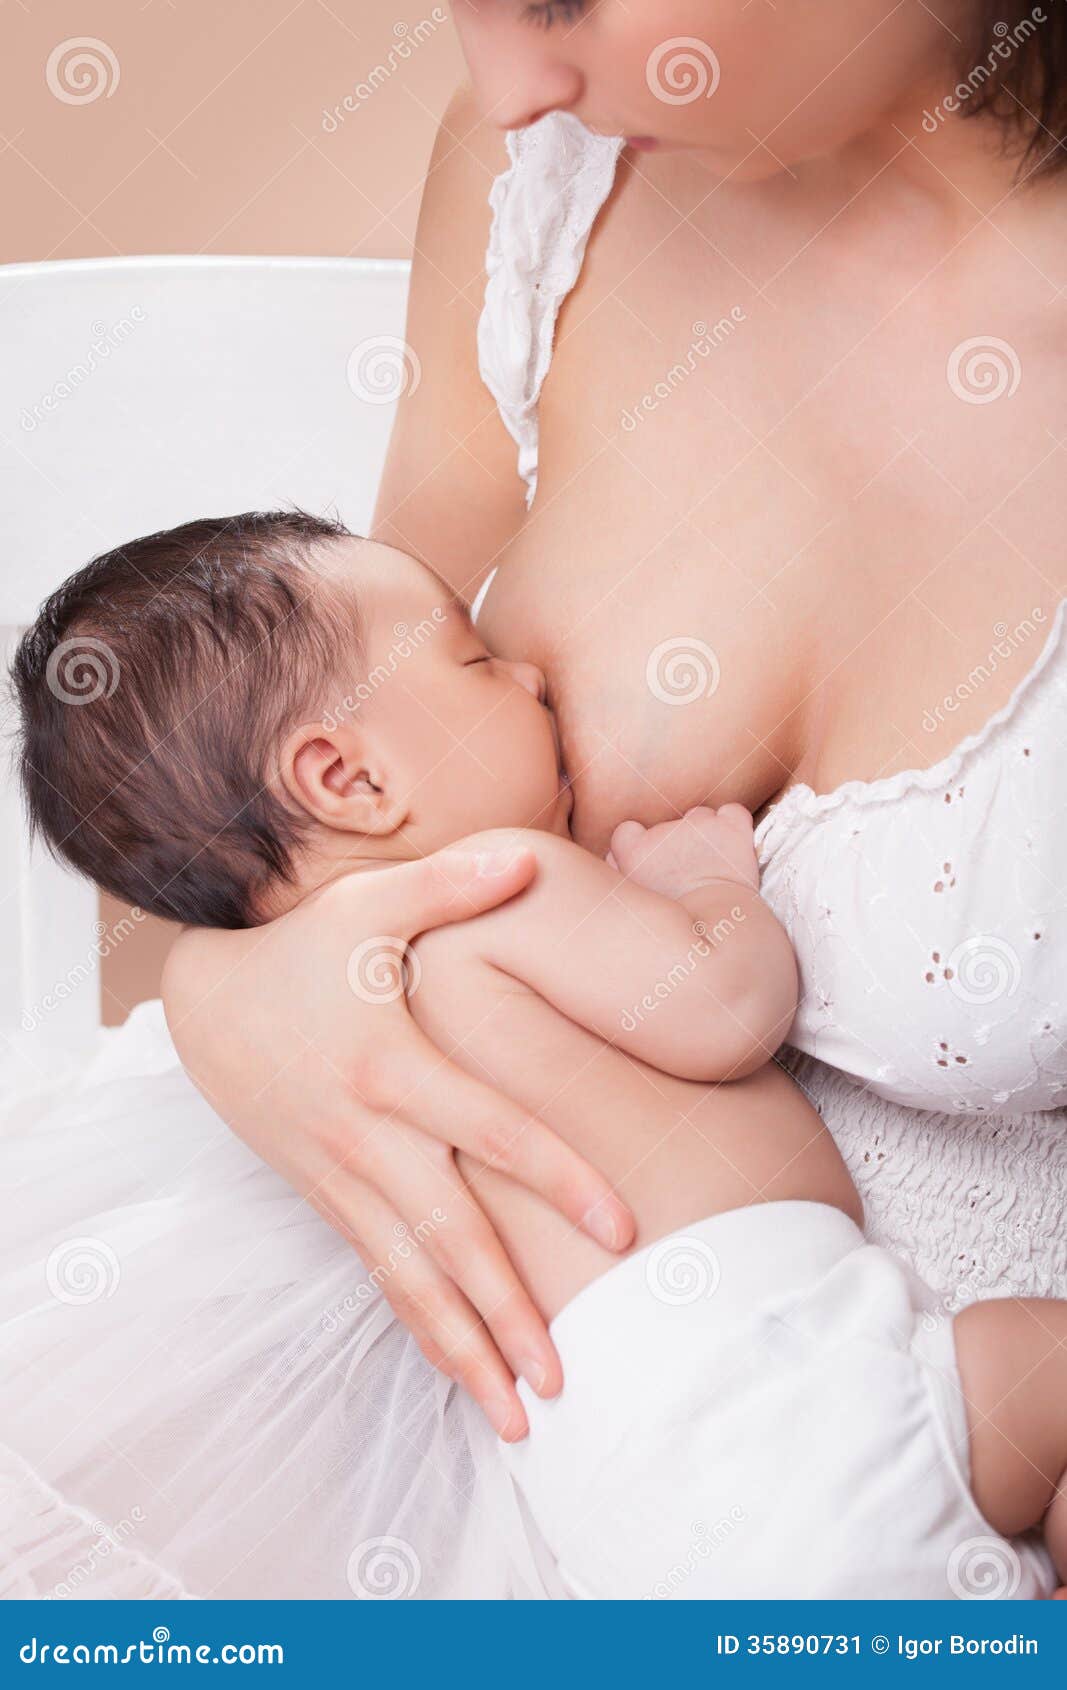 сын держит за грудь маму фото 92